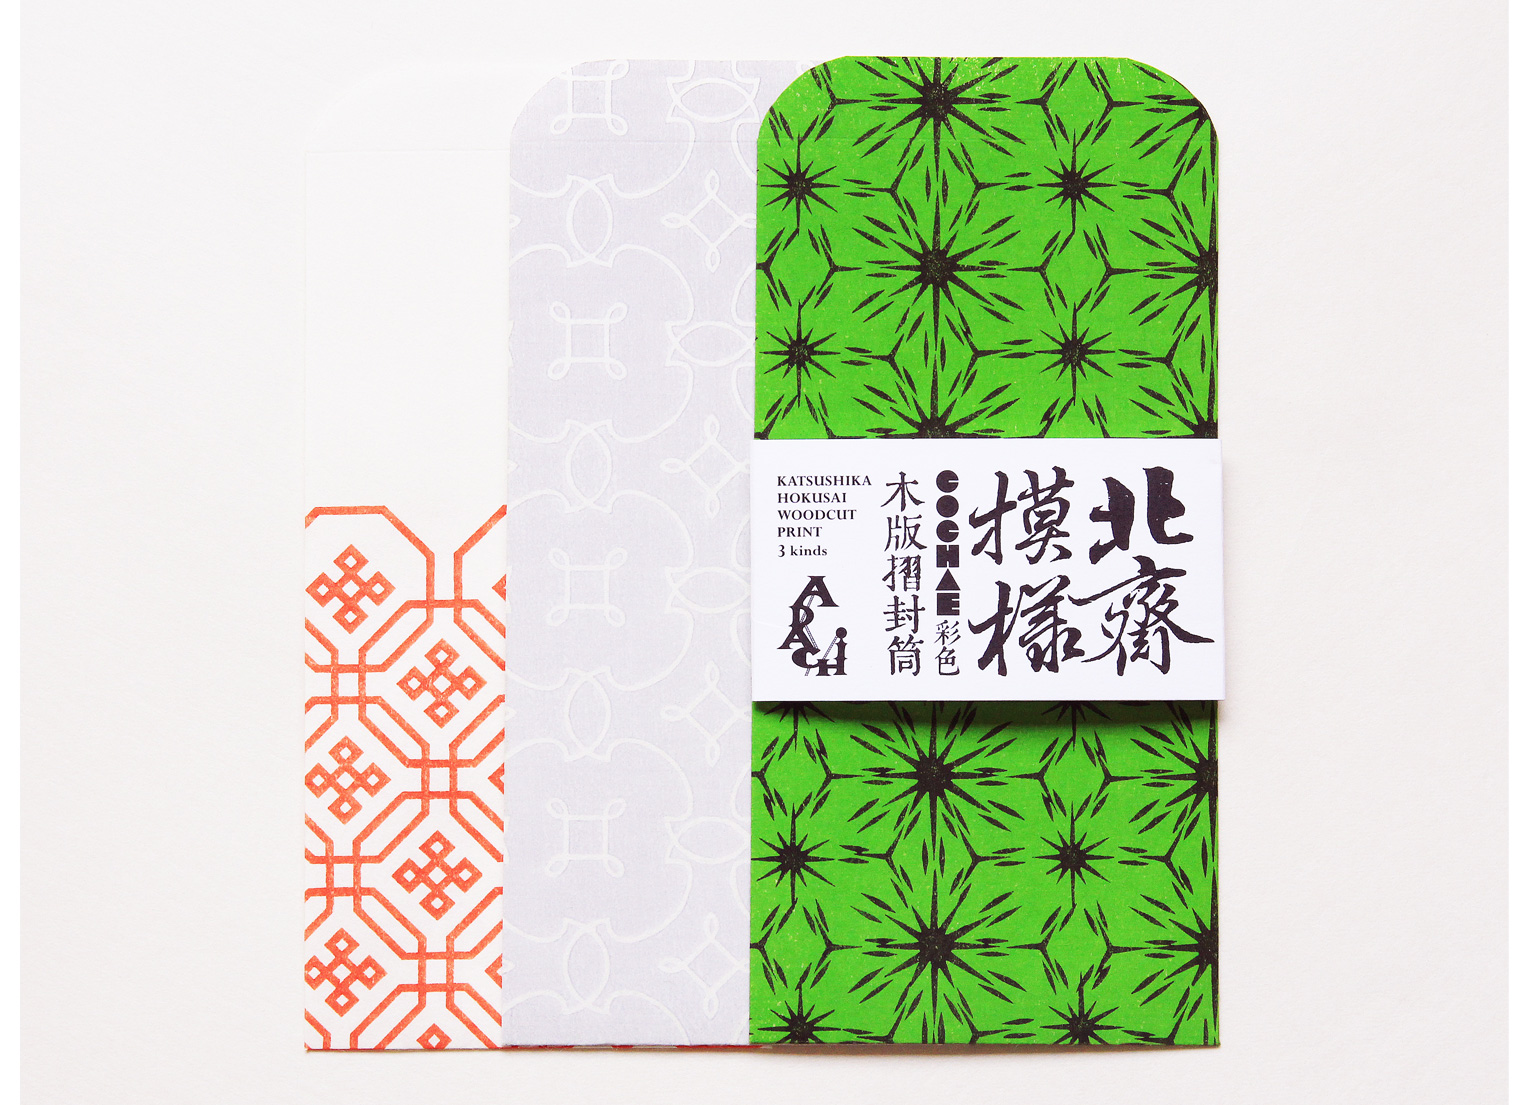 北斎×COCHAE×アダチ版画 カラフルな木版摺封筒で伝統の技に触れる